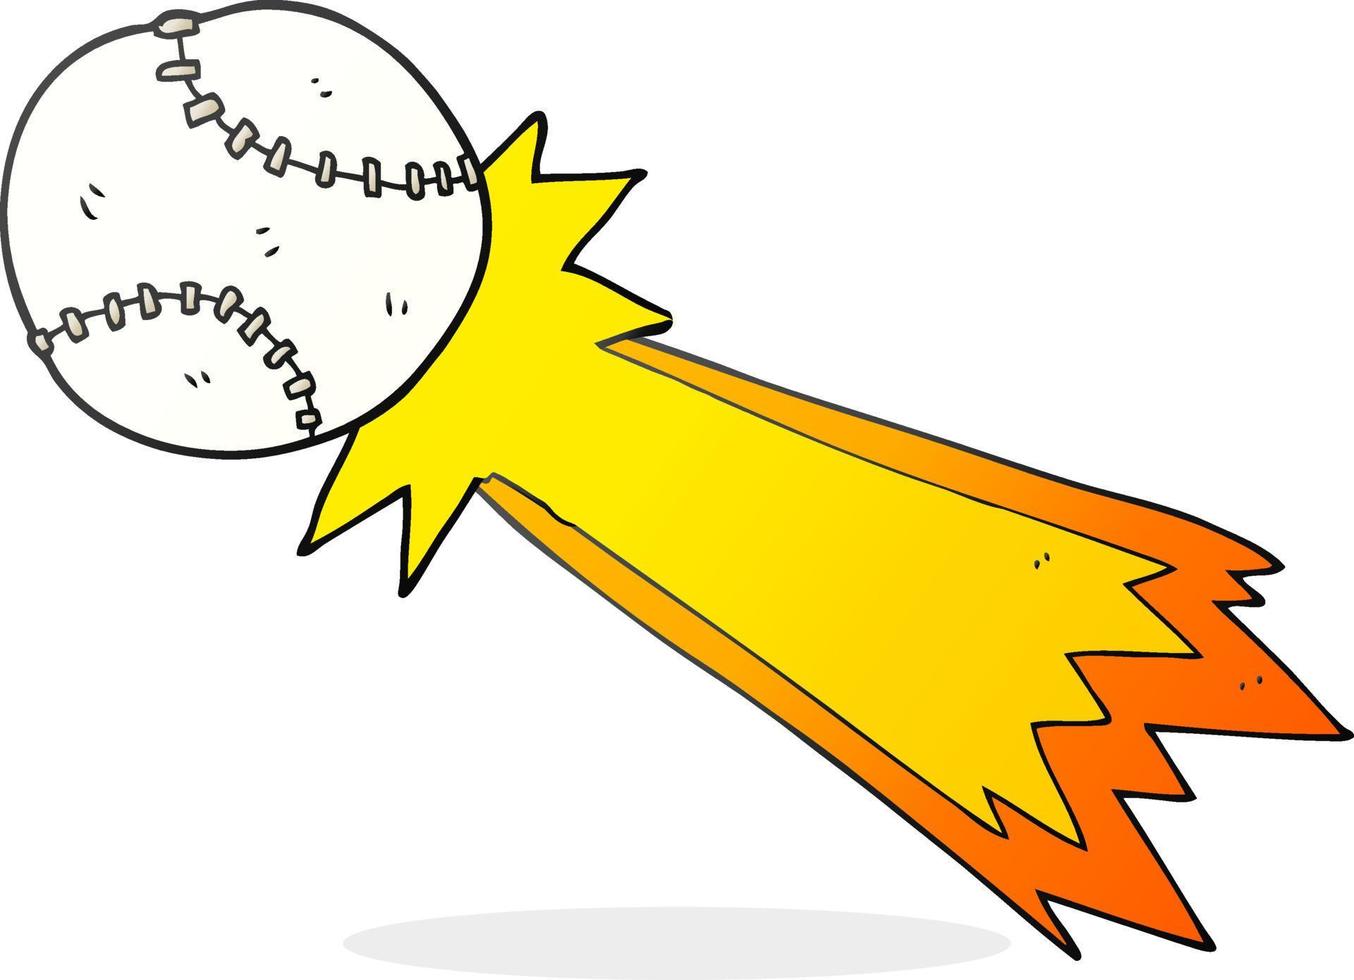 bola de beisebol de desenho animado desenhada à mão livre vetor